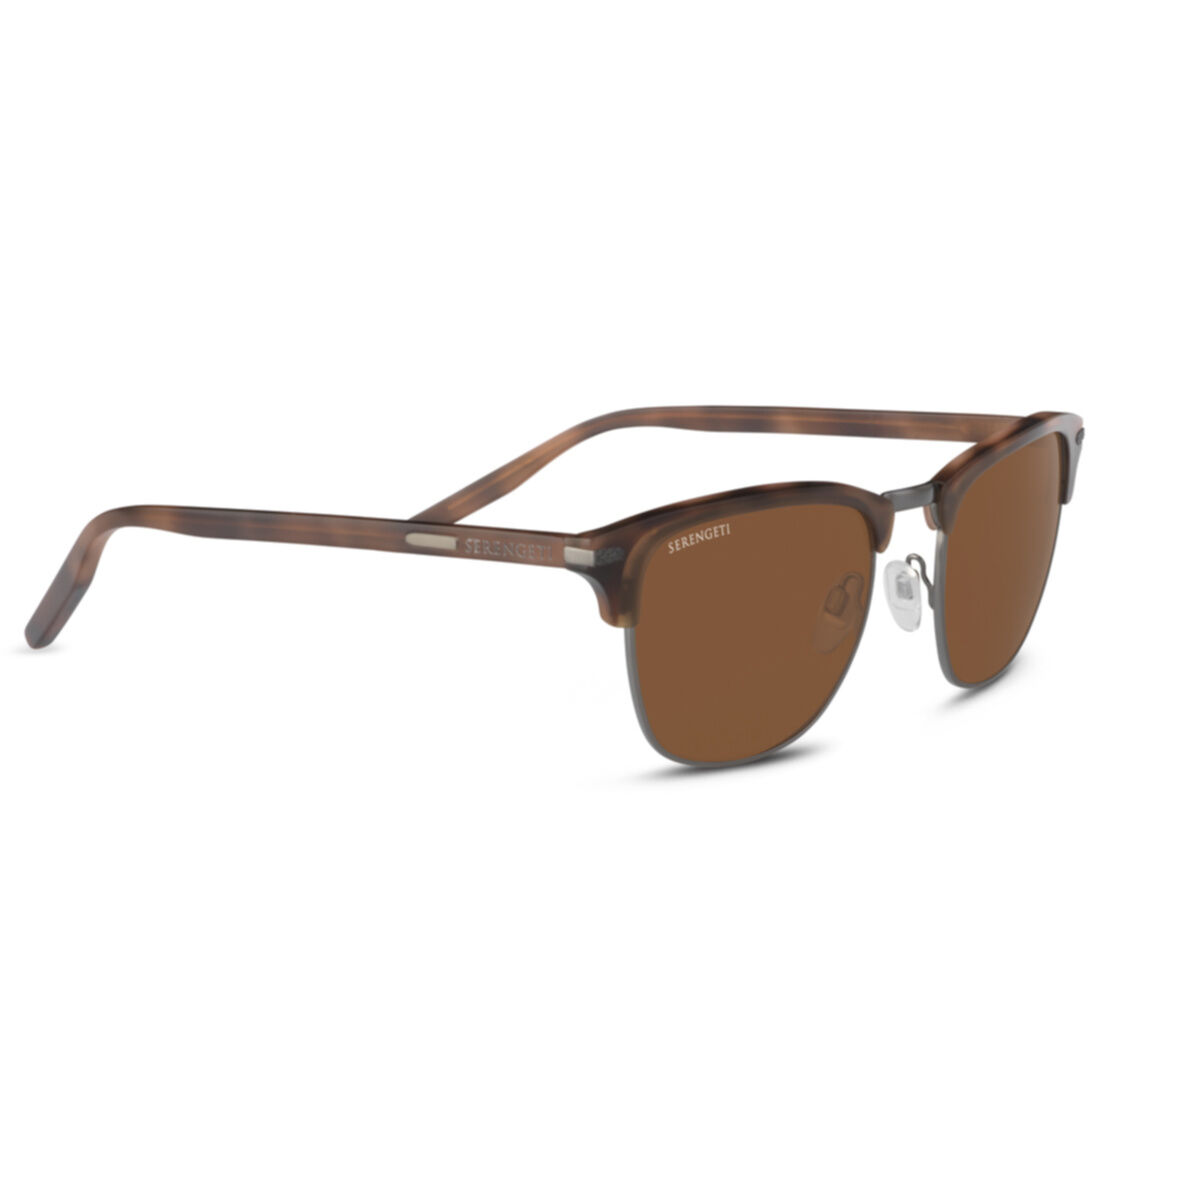 Serengeti ALRAY - Modern Sunglasses for Men - Mineral Lens